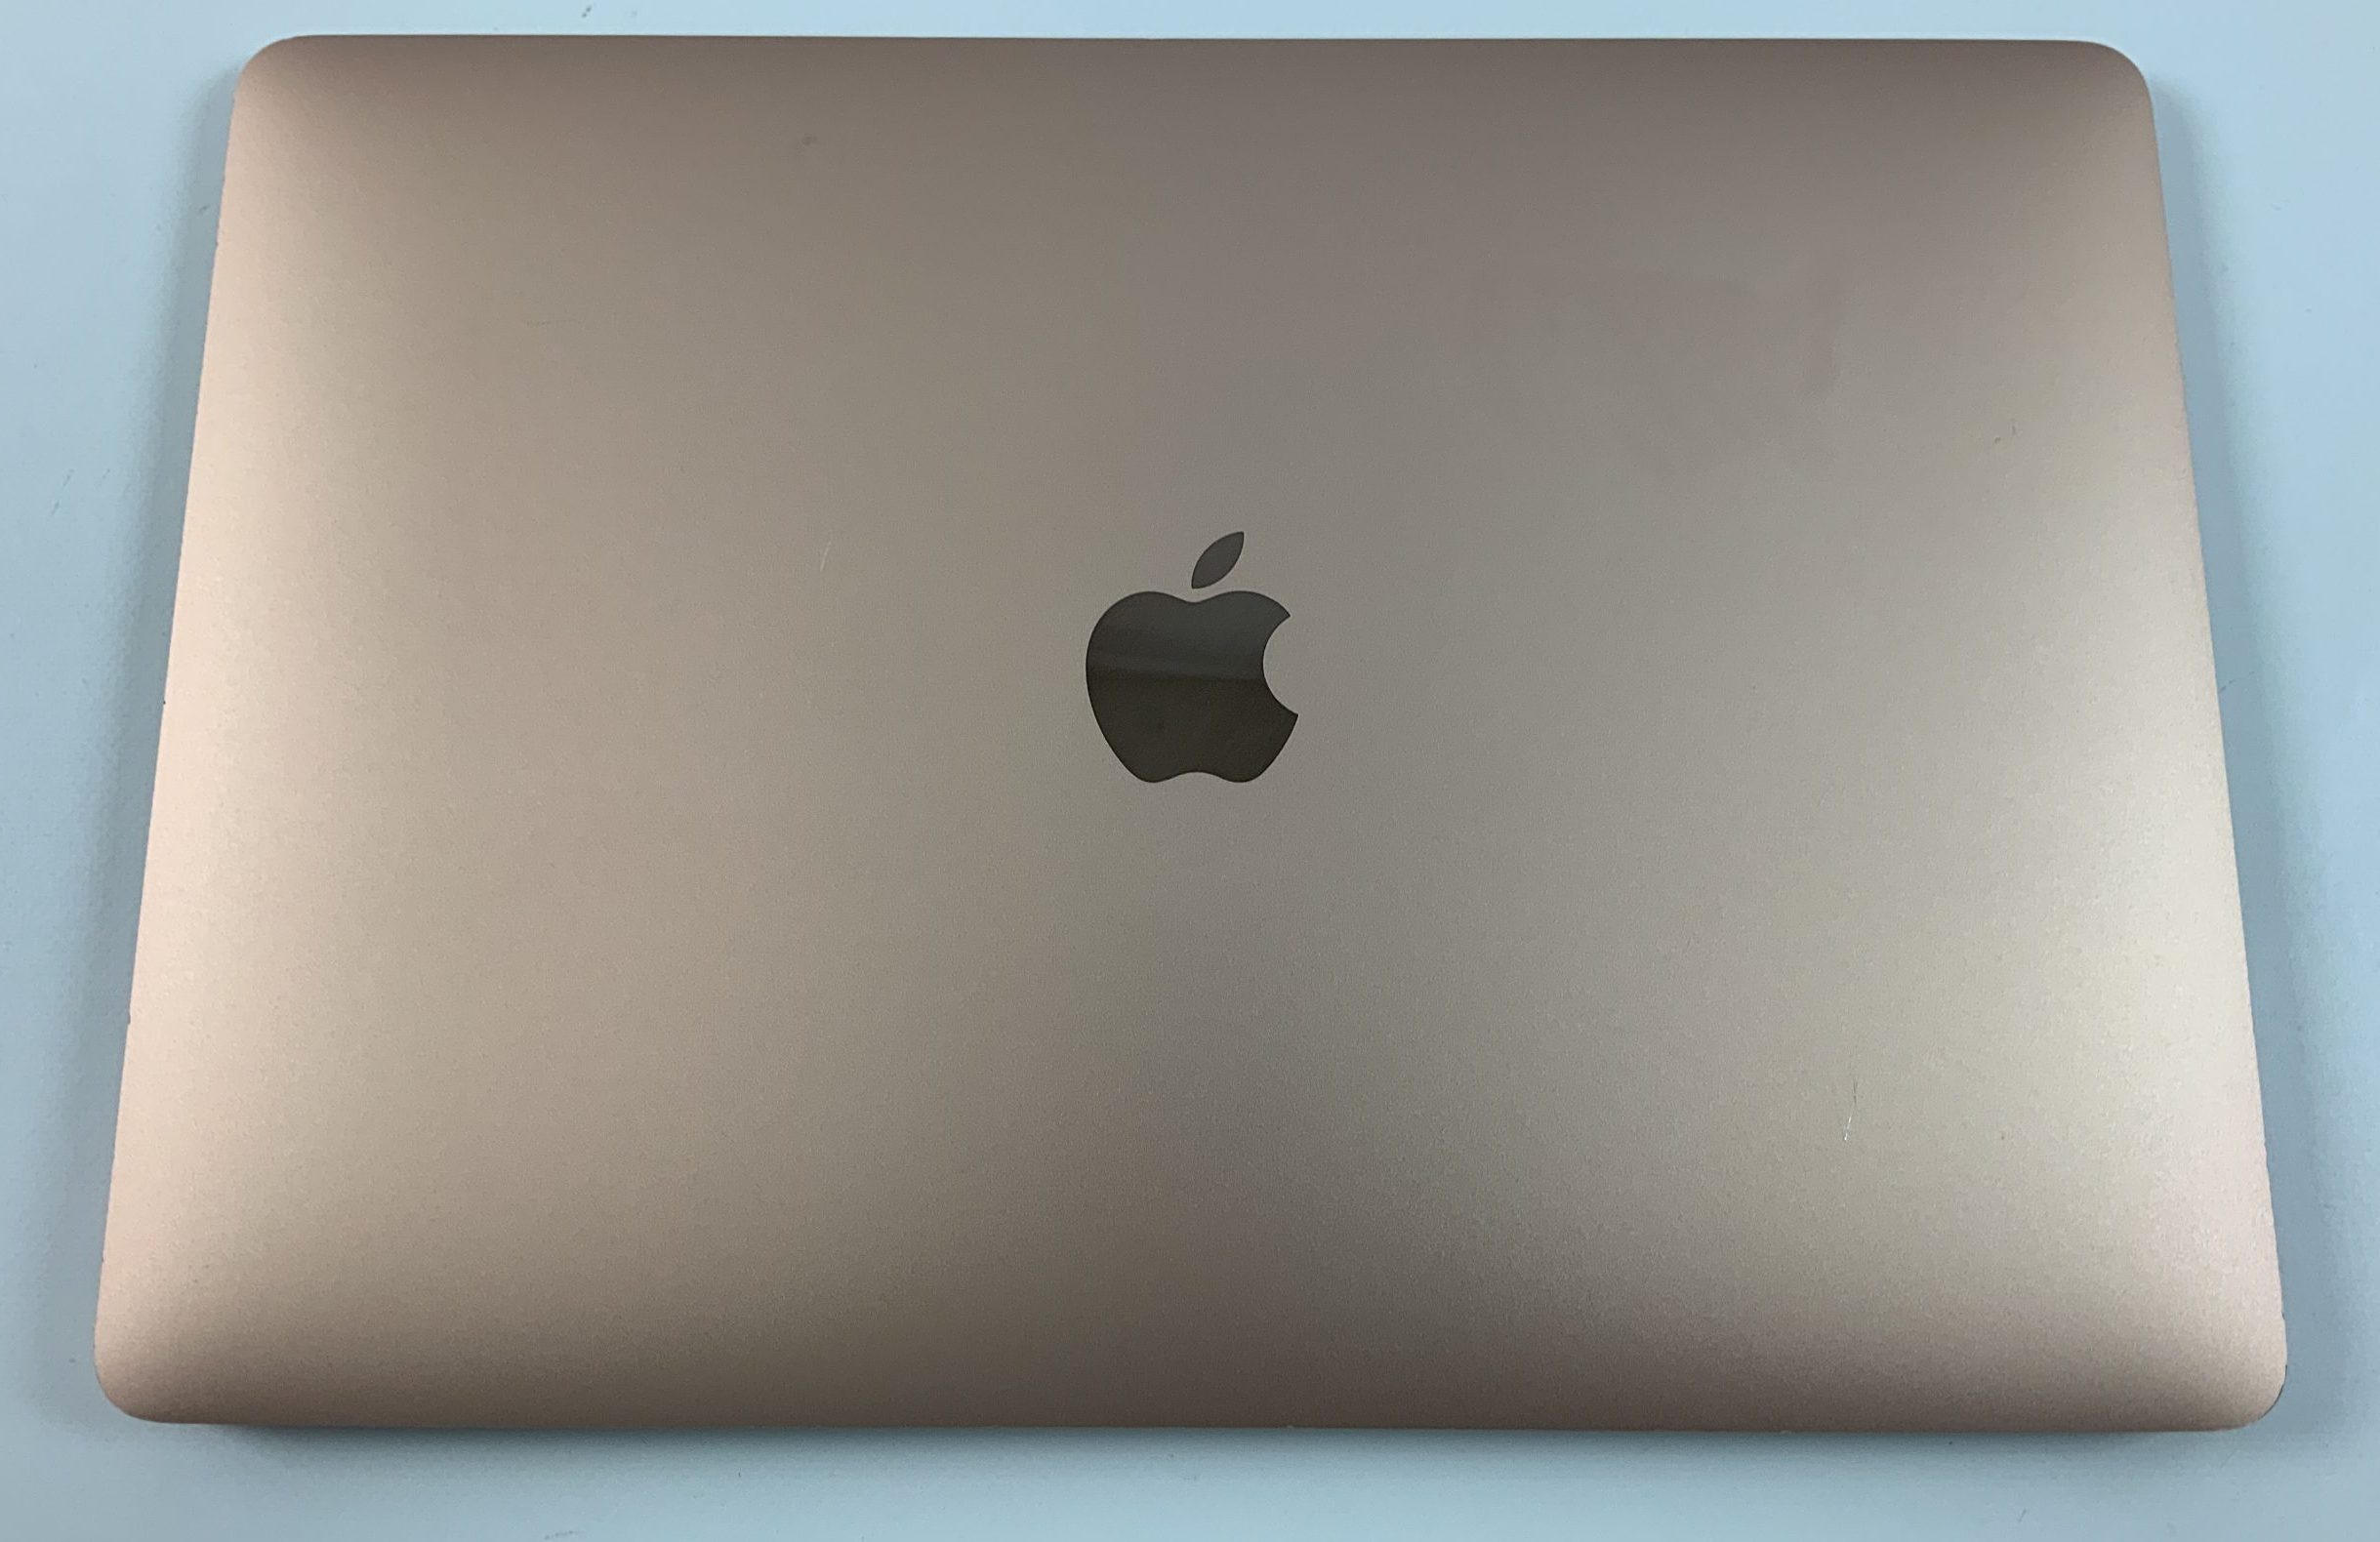 MacBook Air 13" Mid 2019 (Intel Core i5 1.6 GHz 16 GB RAM 256 GB SSD), Gold, Intel Core i5 1.6 GHz, 16 GB RAM, 256 GB SSD, imagen 2